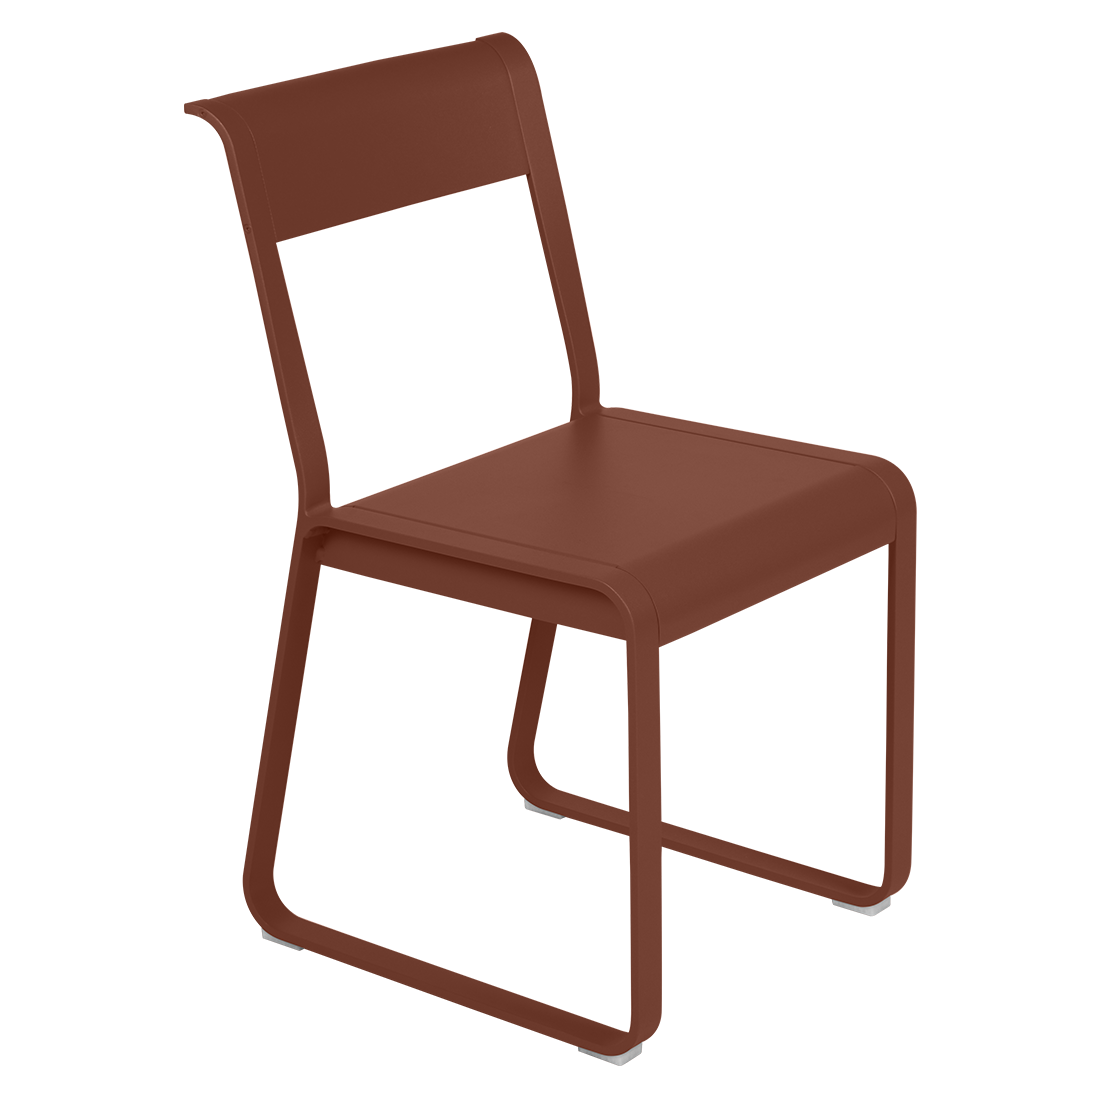 Bellevie Chair